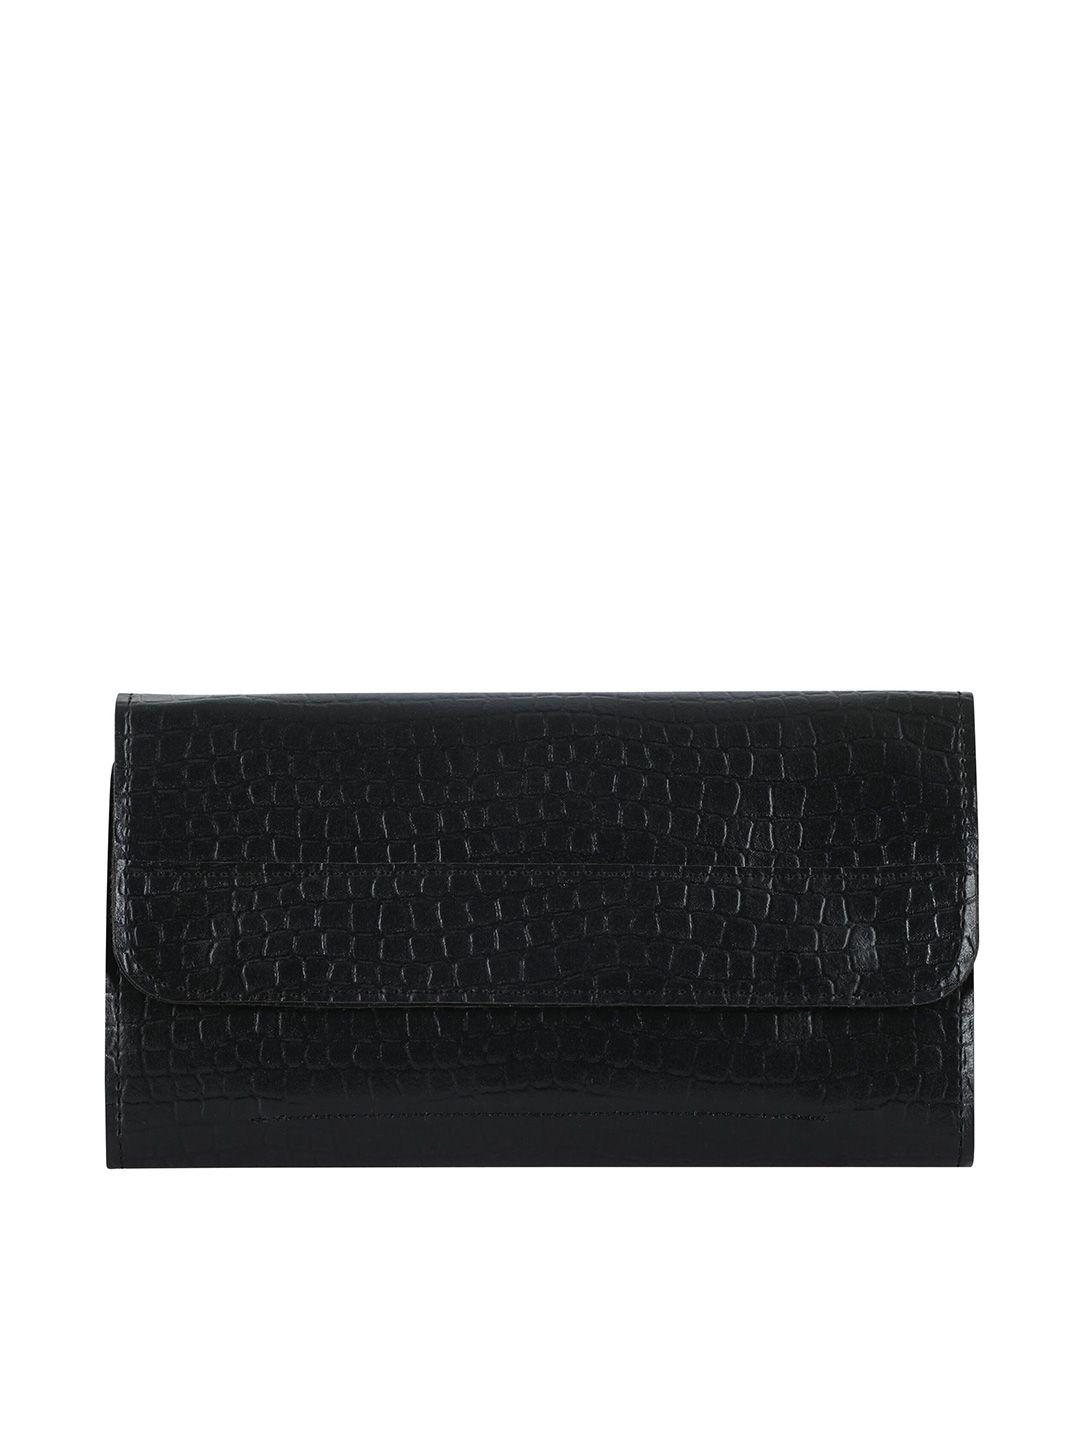 toteteca women black textured pu envelope wallet